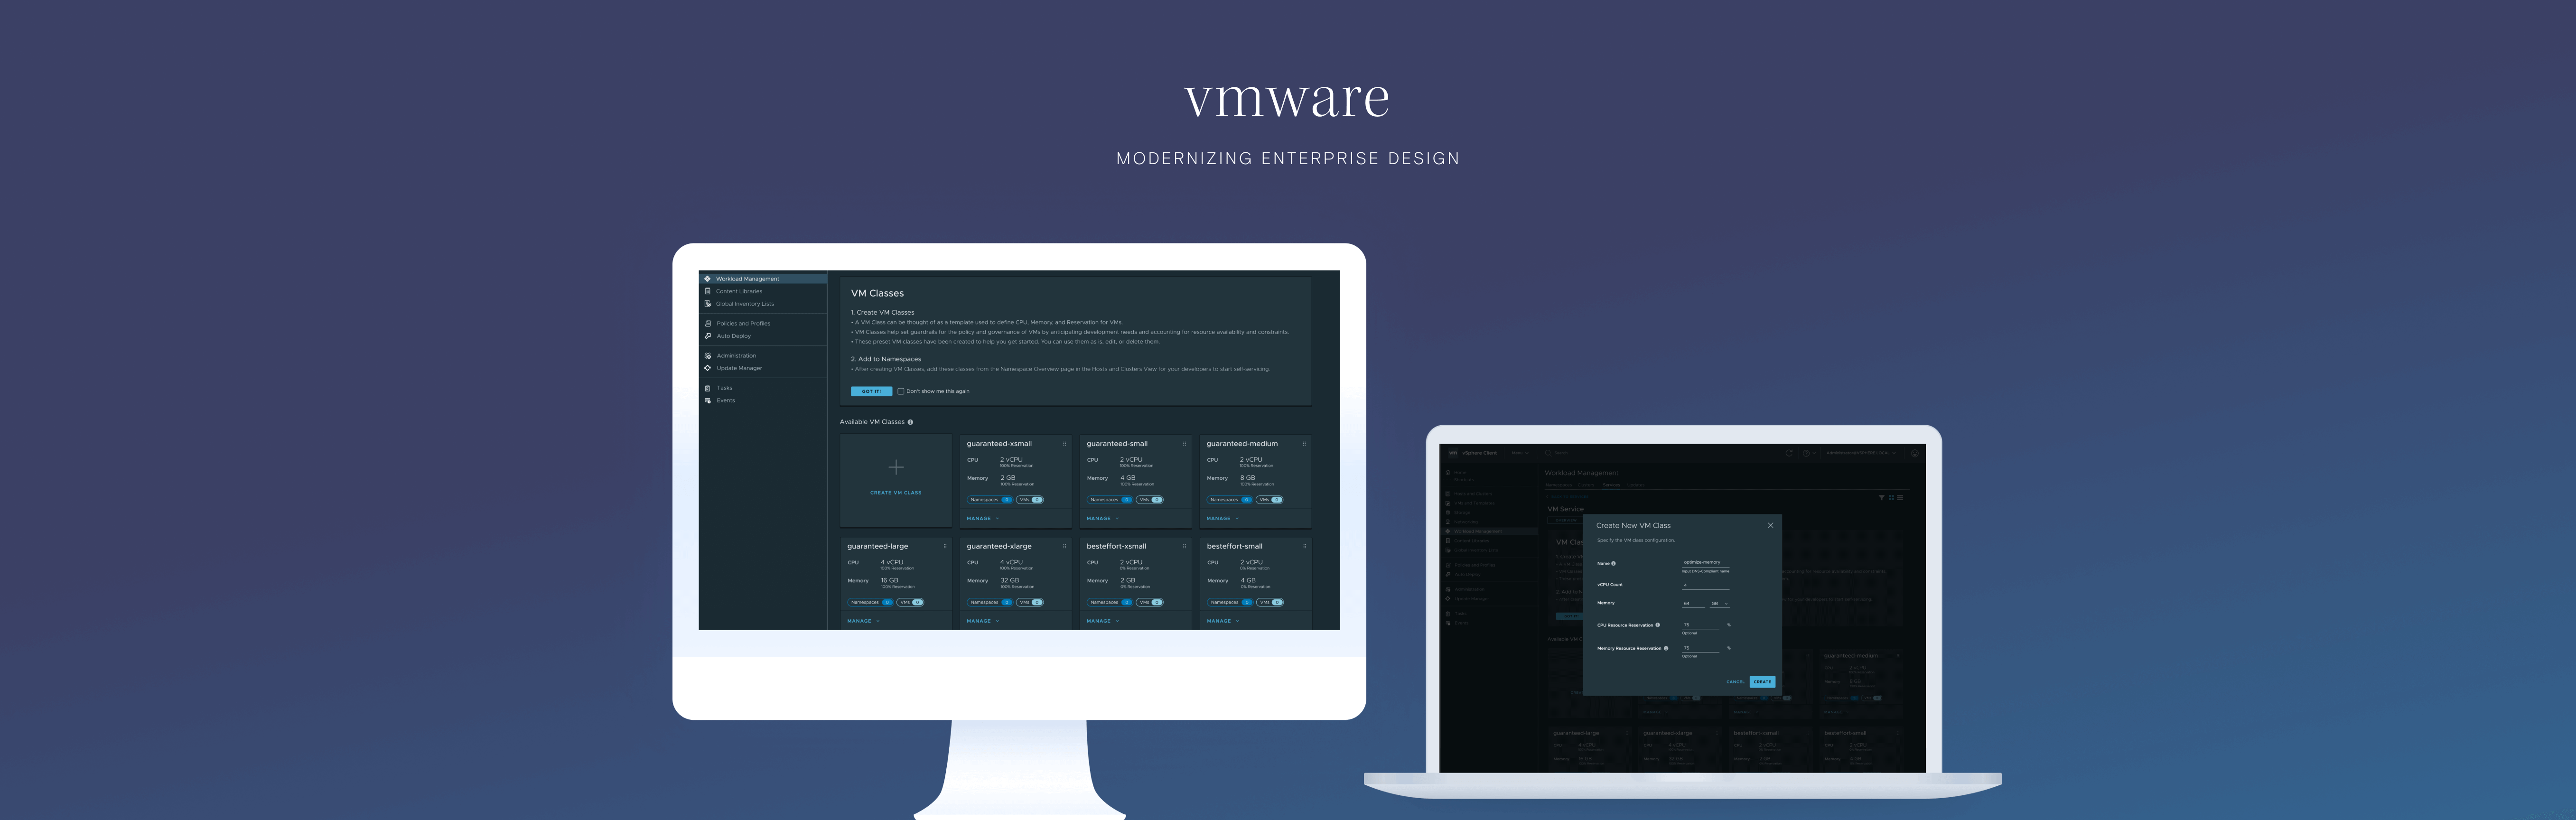 vmware-laptop-desktop-2-1